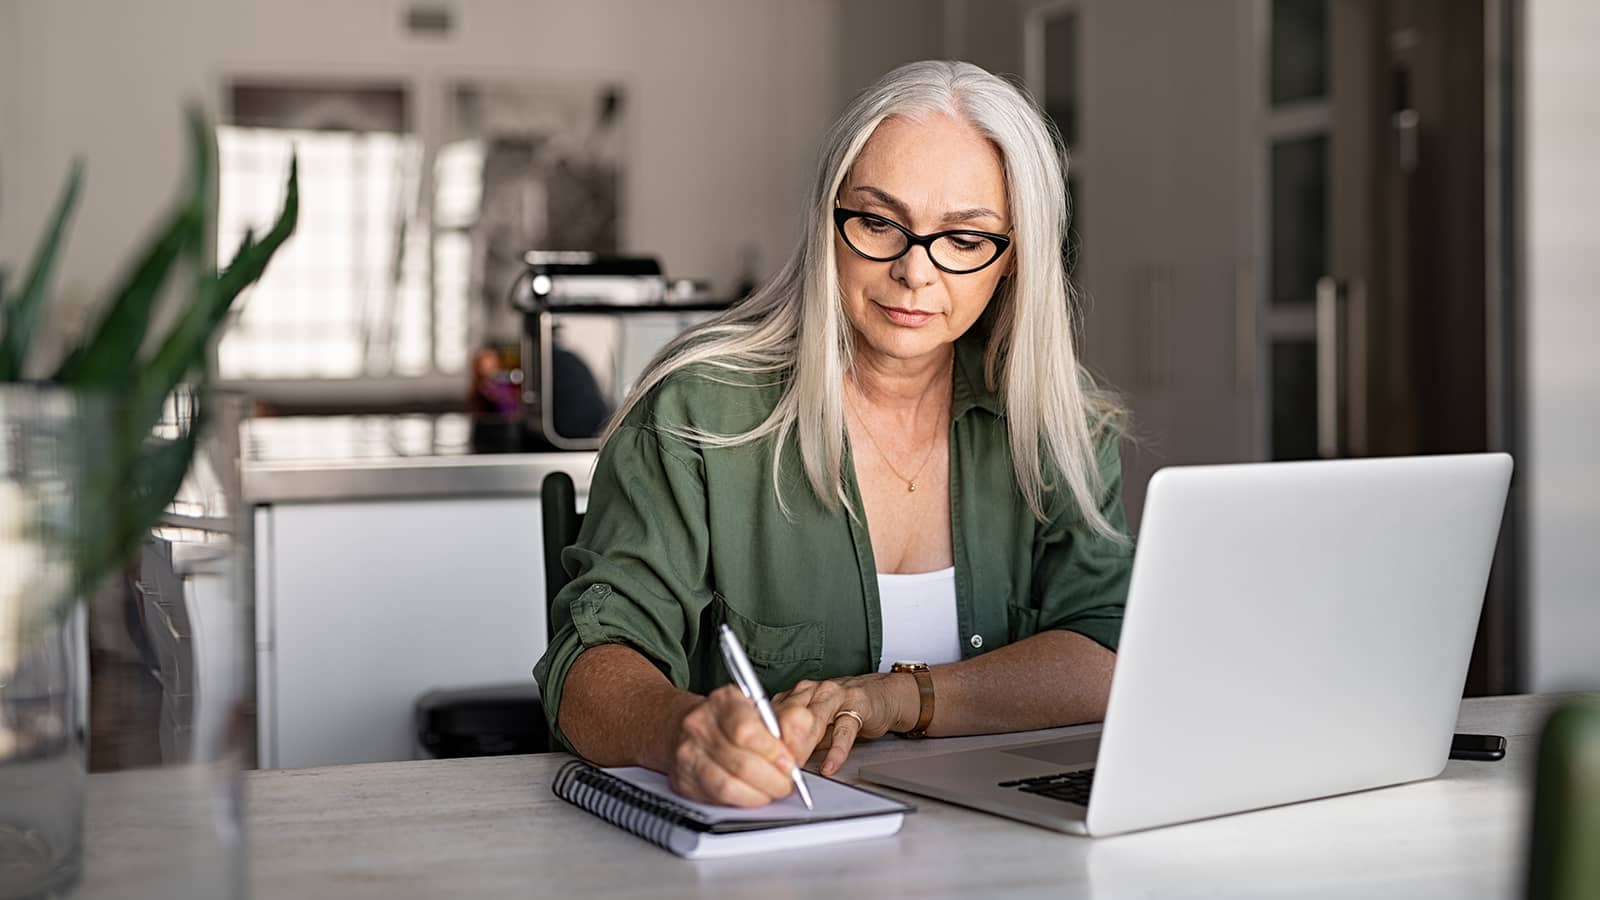 Woman writing while at computer